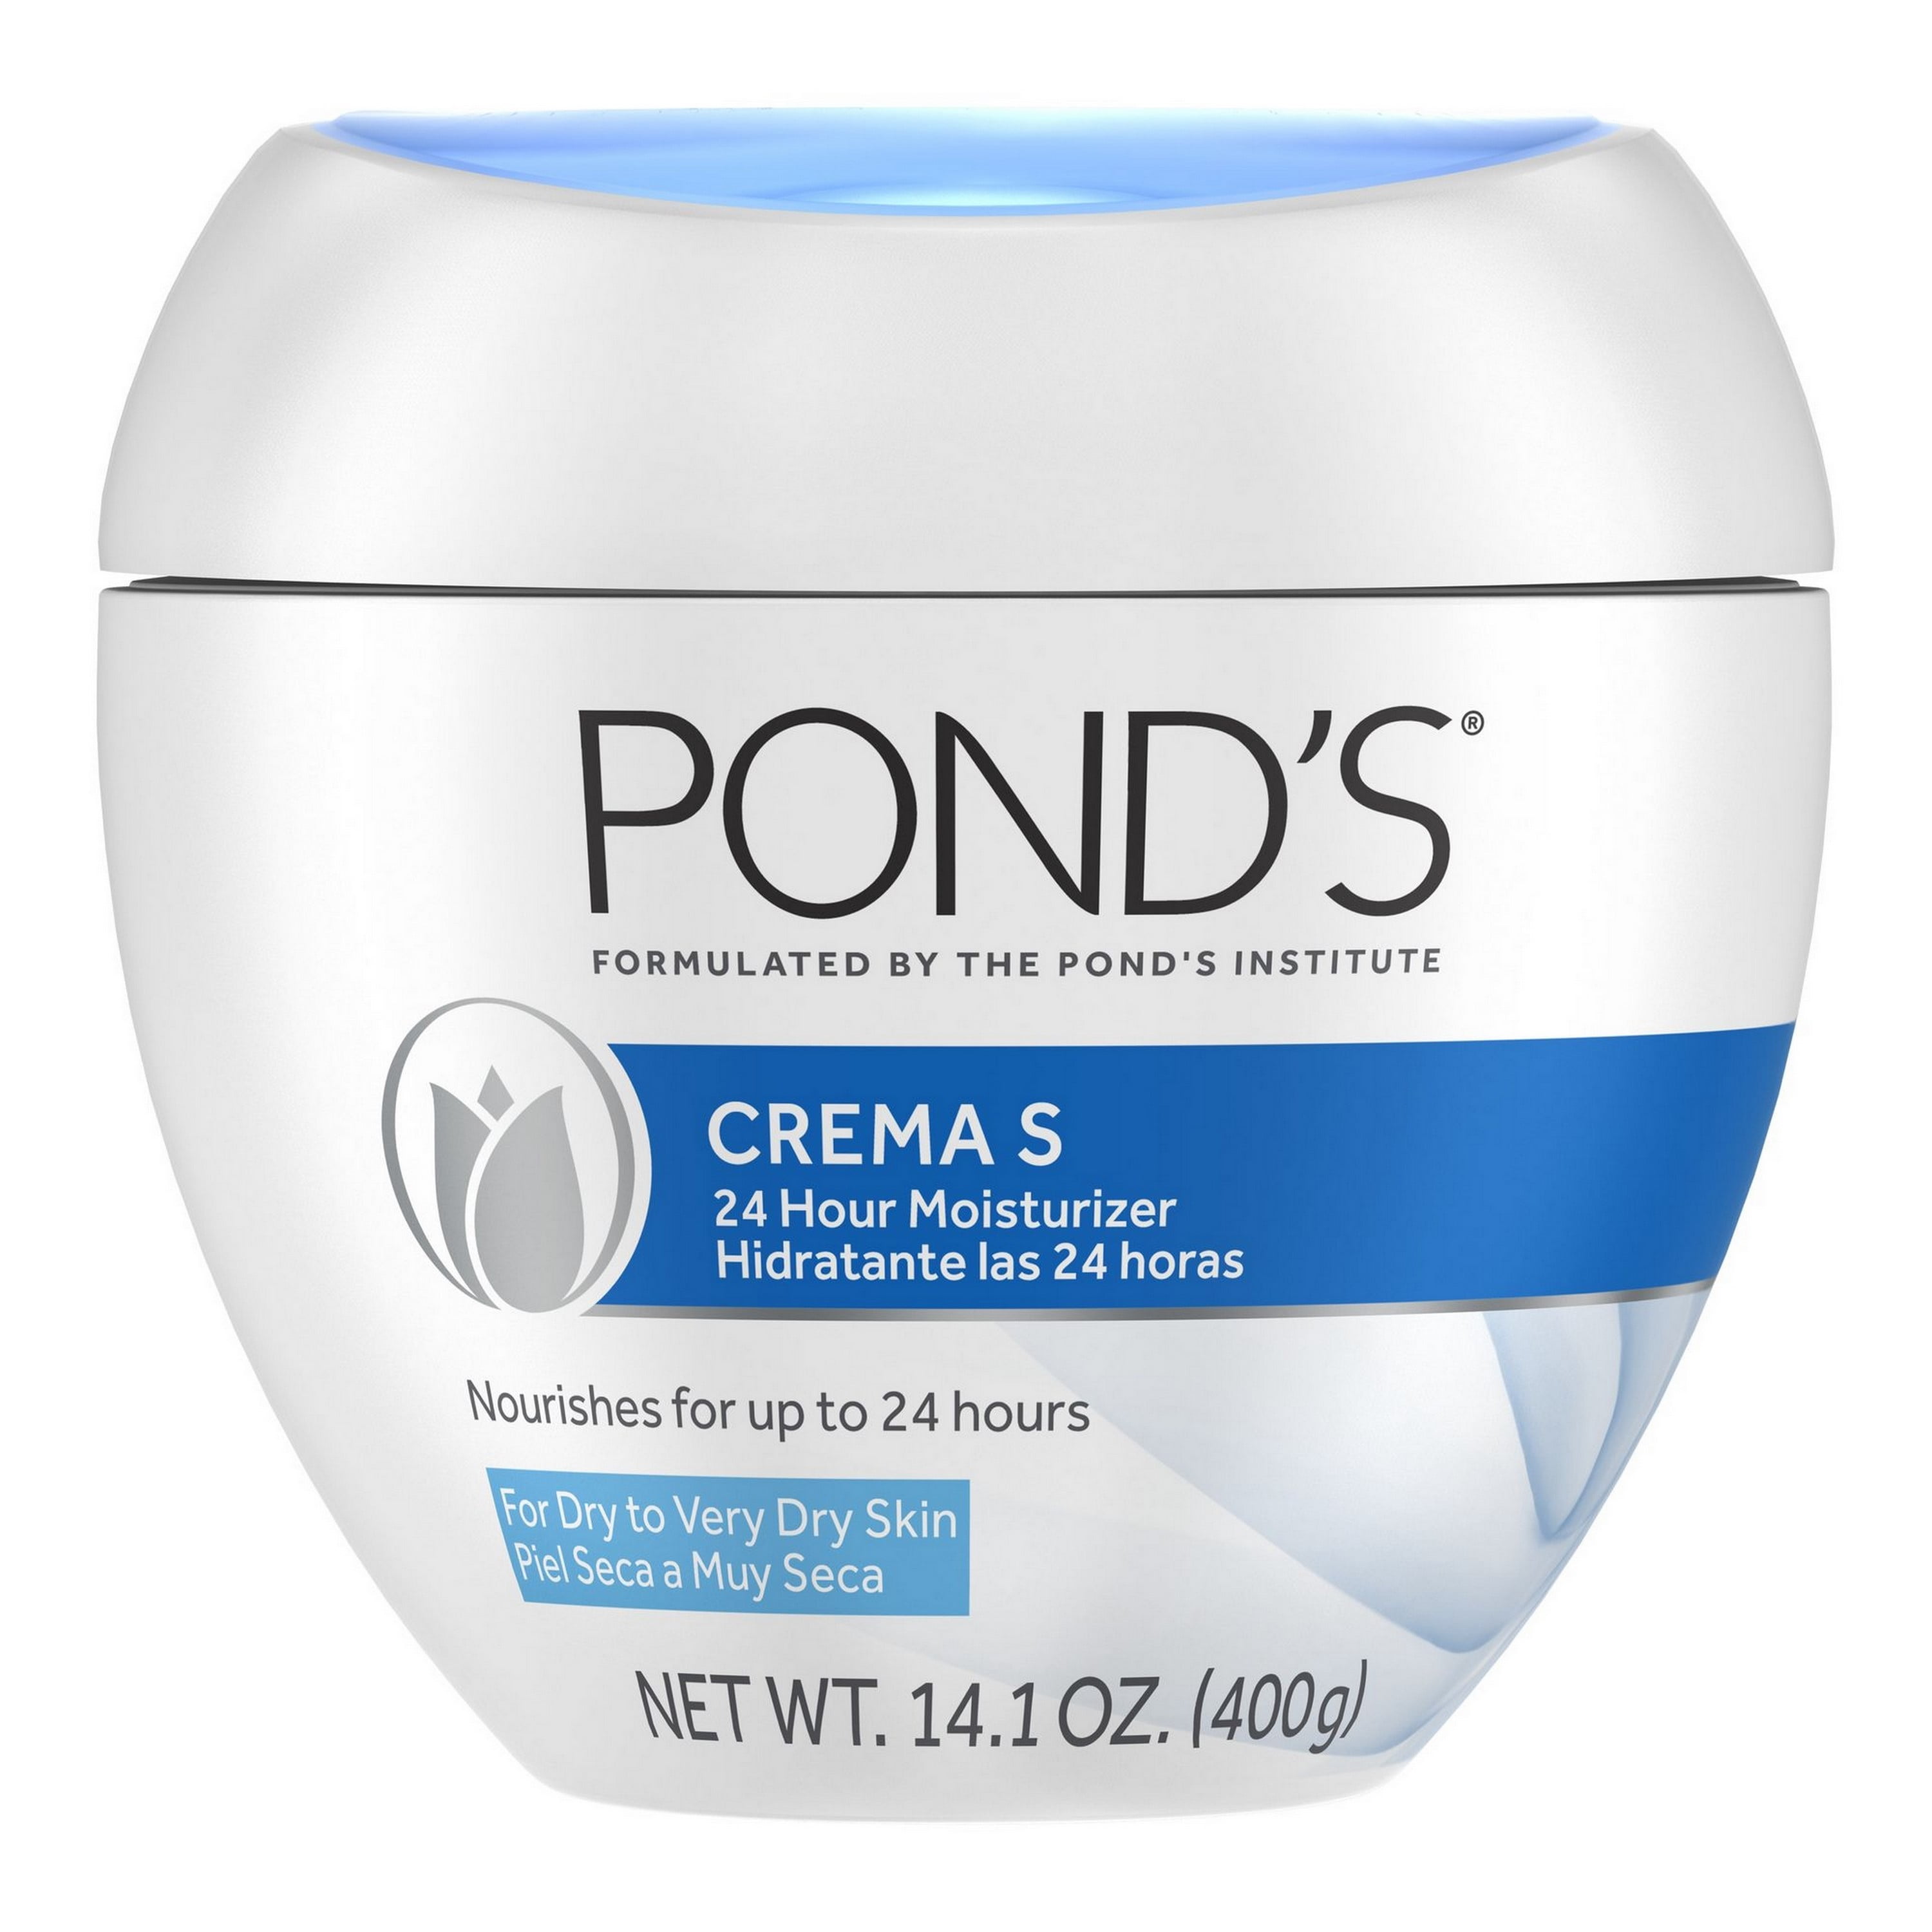 POND'S Face Cream Crema S, 14.1 oz